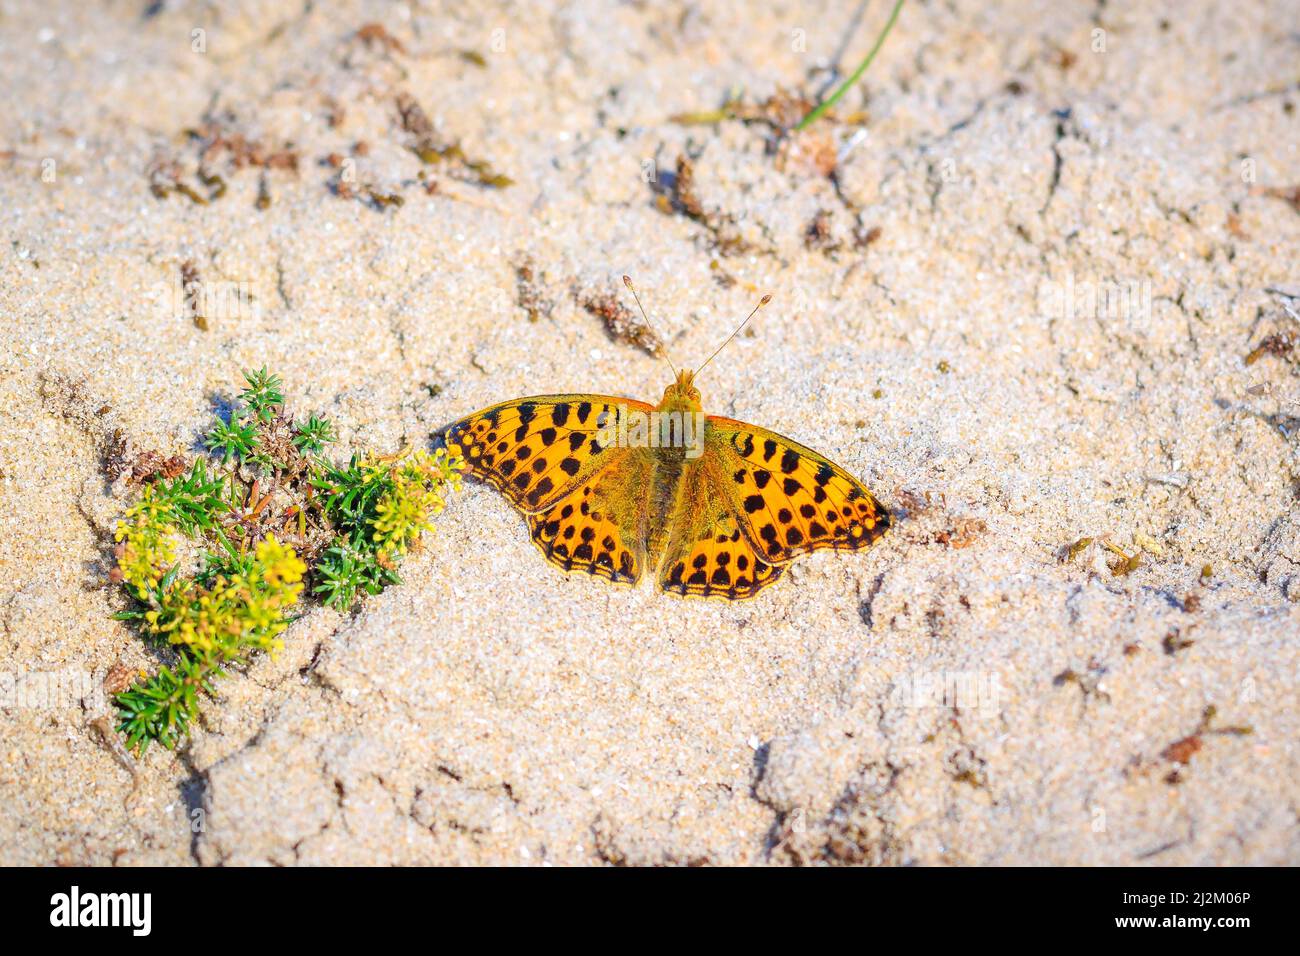 La reina de España, Speyeria issoria lathonia, mariposa descansando en una pradera. Paisaje de dunas costeras, la brillante luz del sol durante el día. Foto de stock